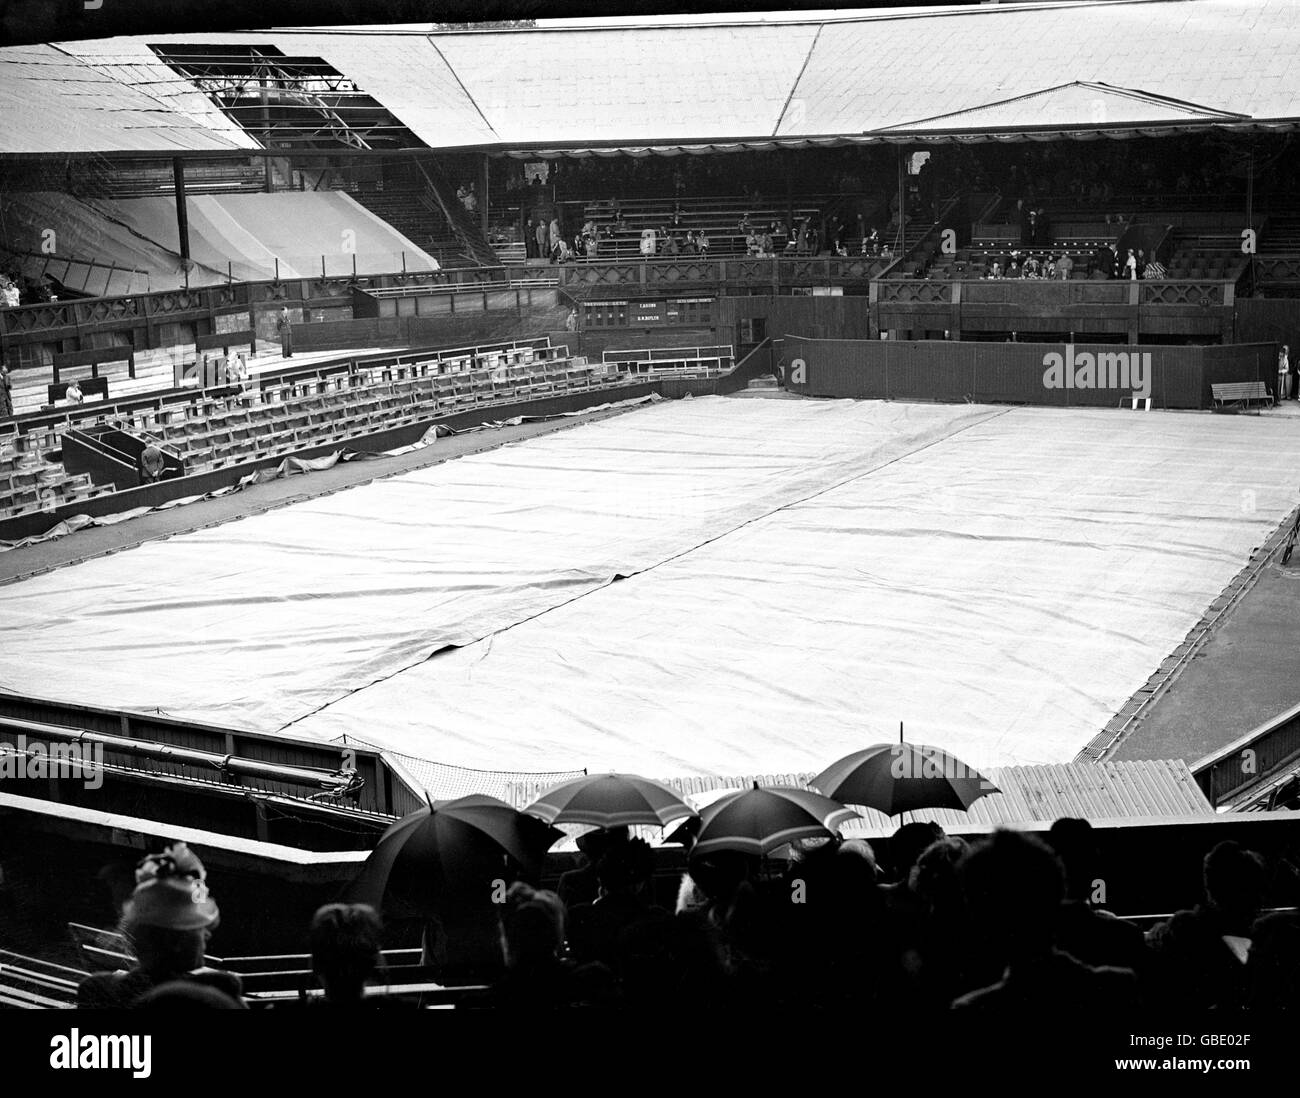 Tennis - Wimbledon Championships. Das Center Court ist bedeckt, wenn Regen auf den All England Club fällt (Bombenschäden aus dem Zweiten Weltkrieg sind in der linken oberen Ecke noch gut sichtbar) Stockfoto